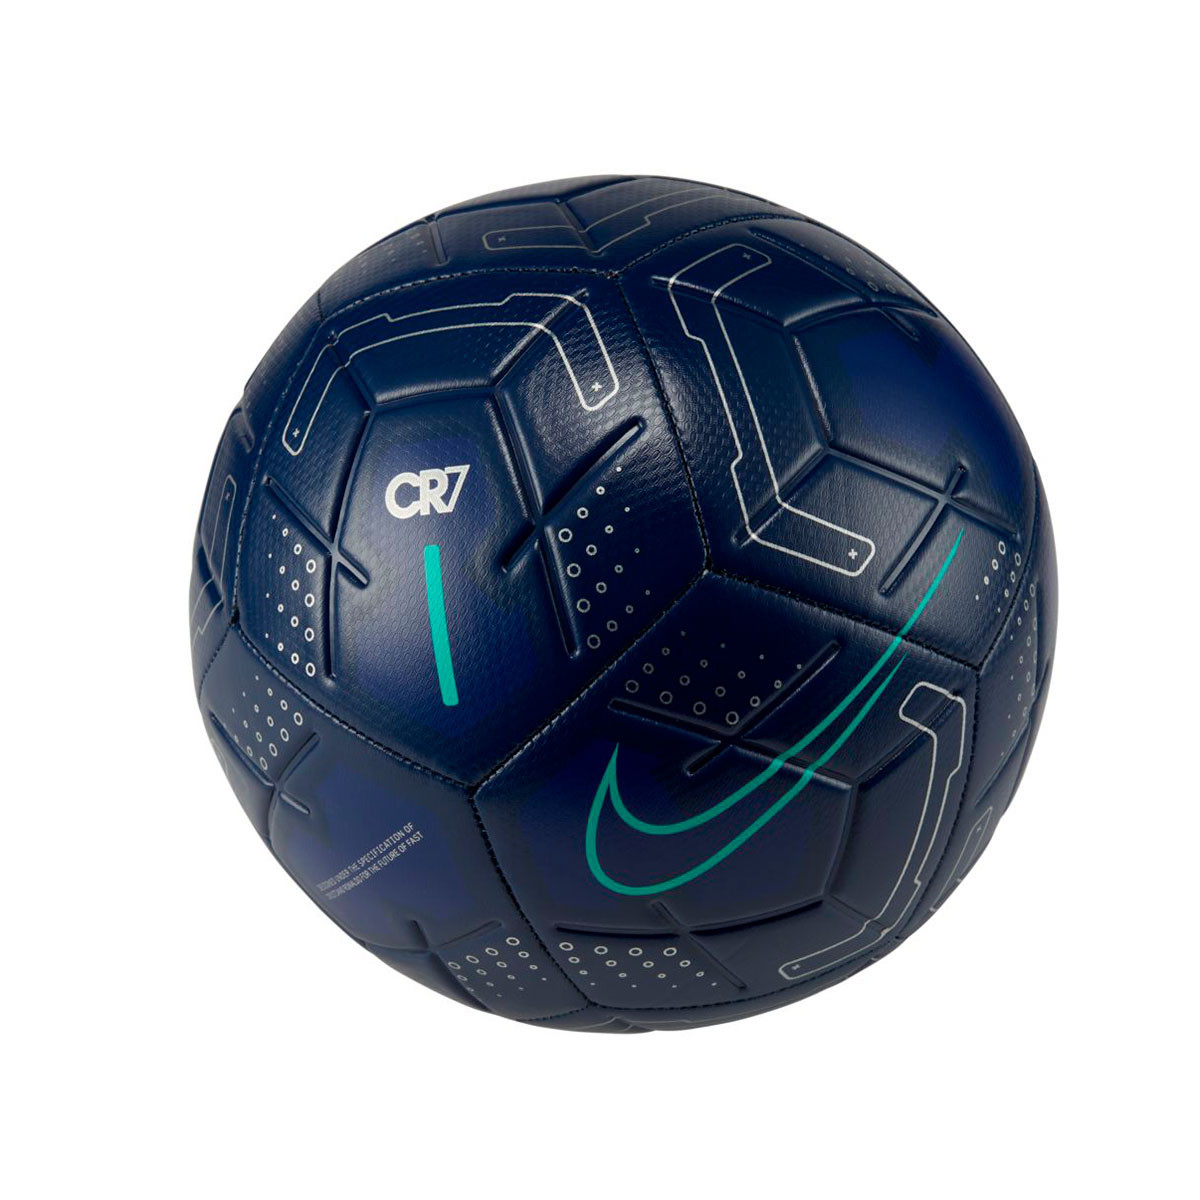 2019 nike soccer ball